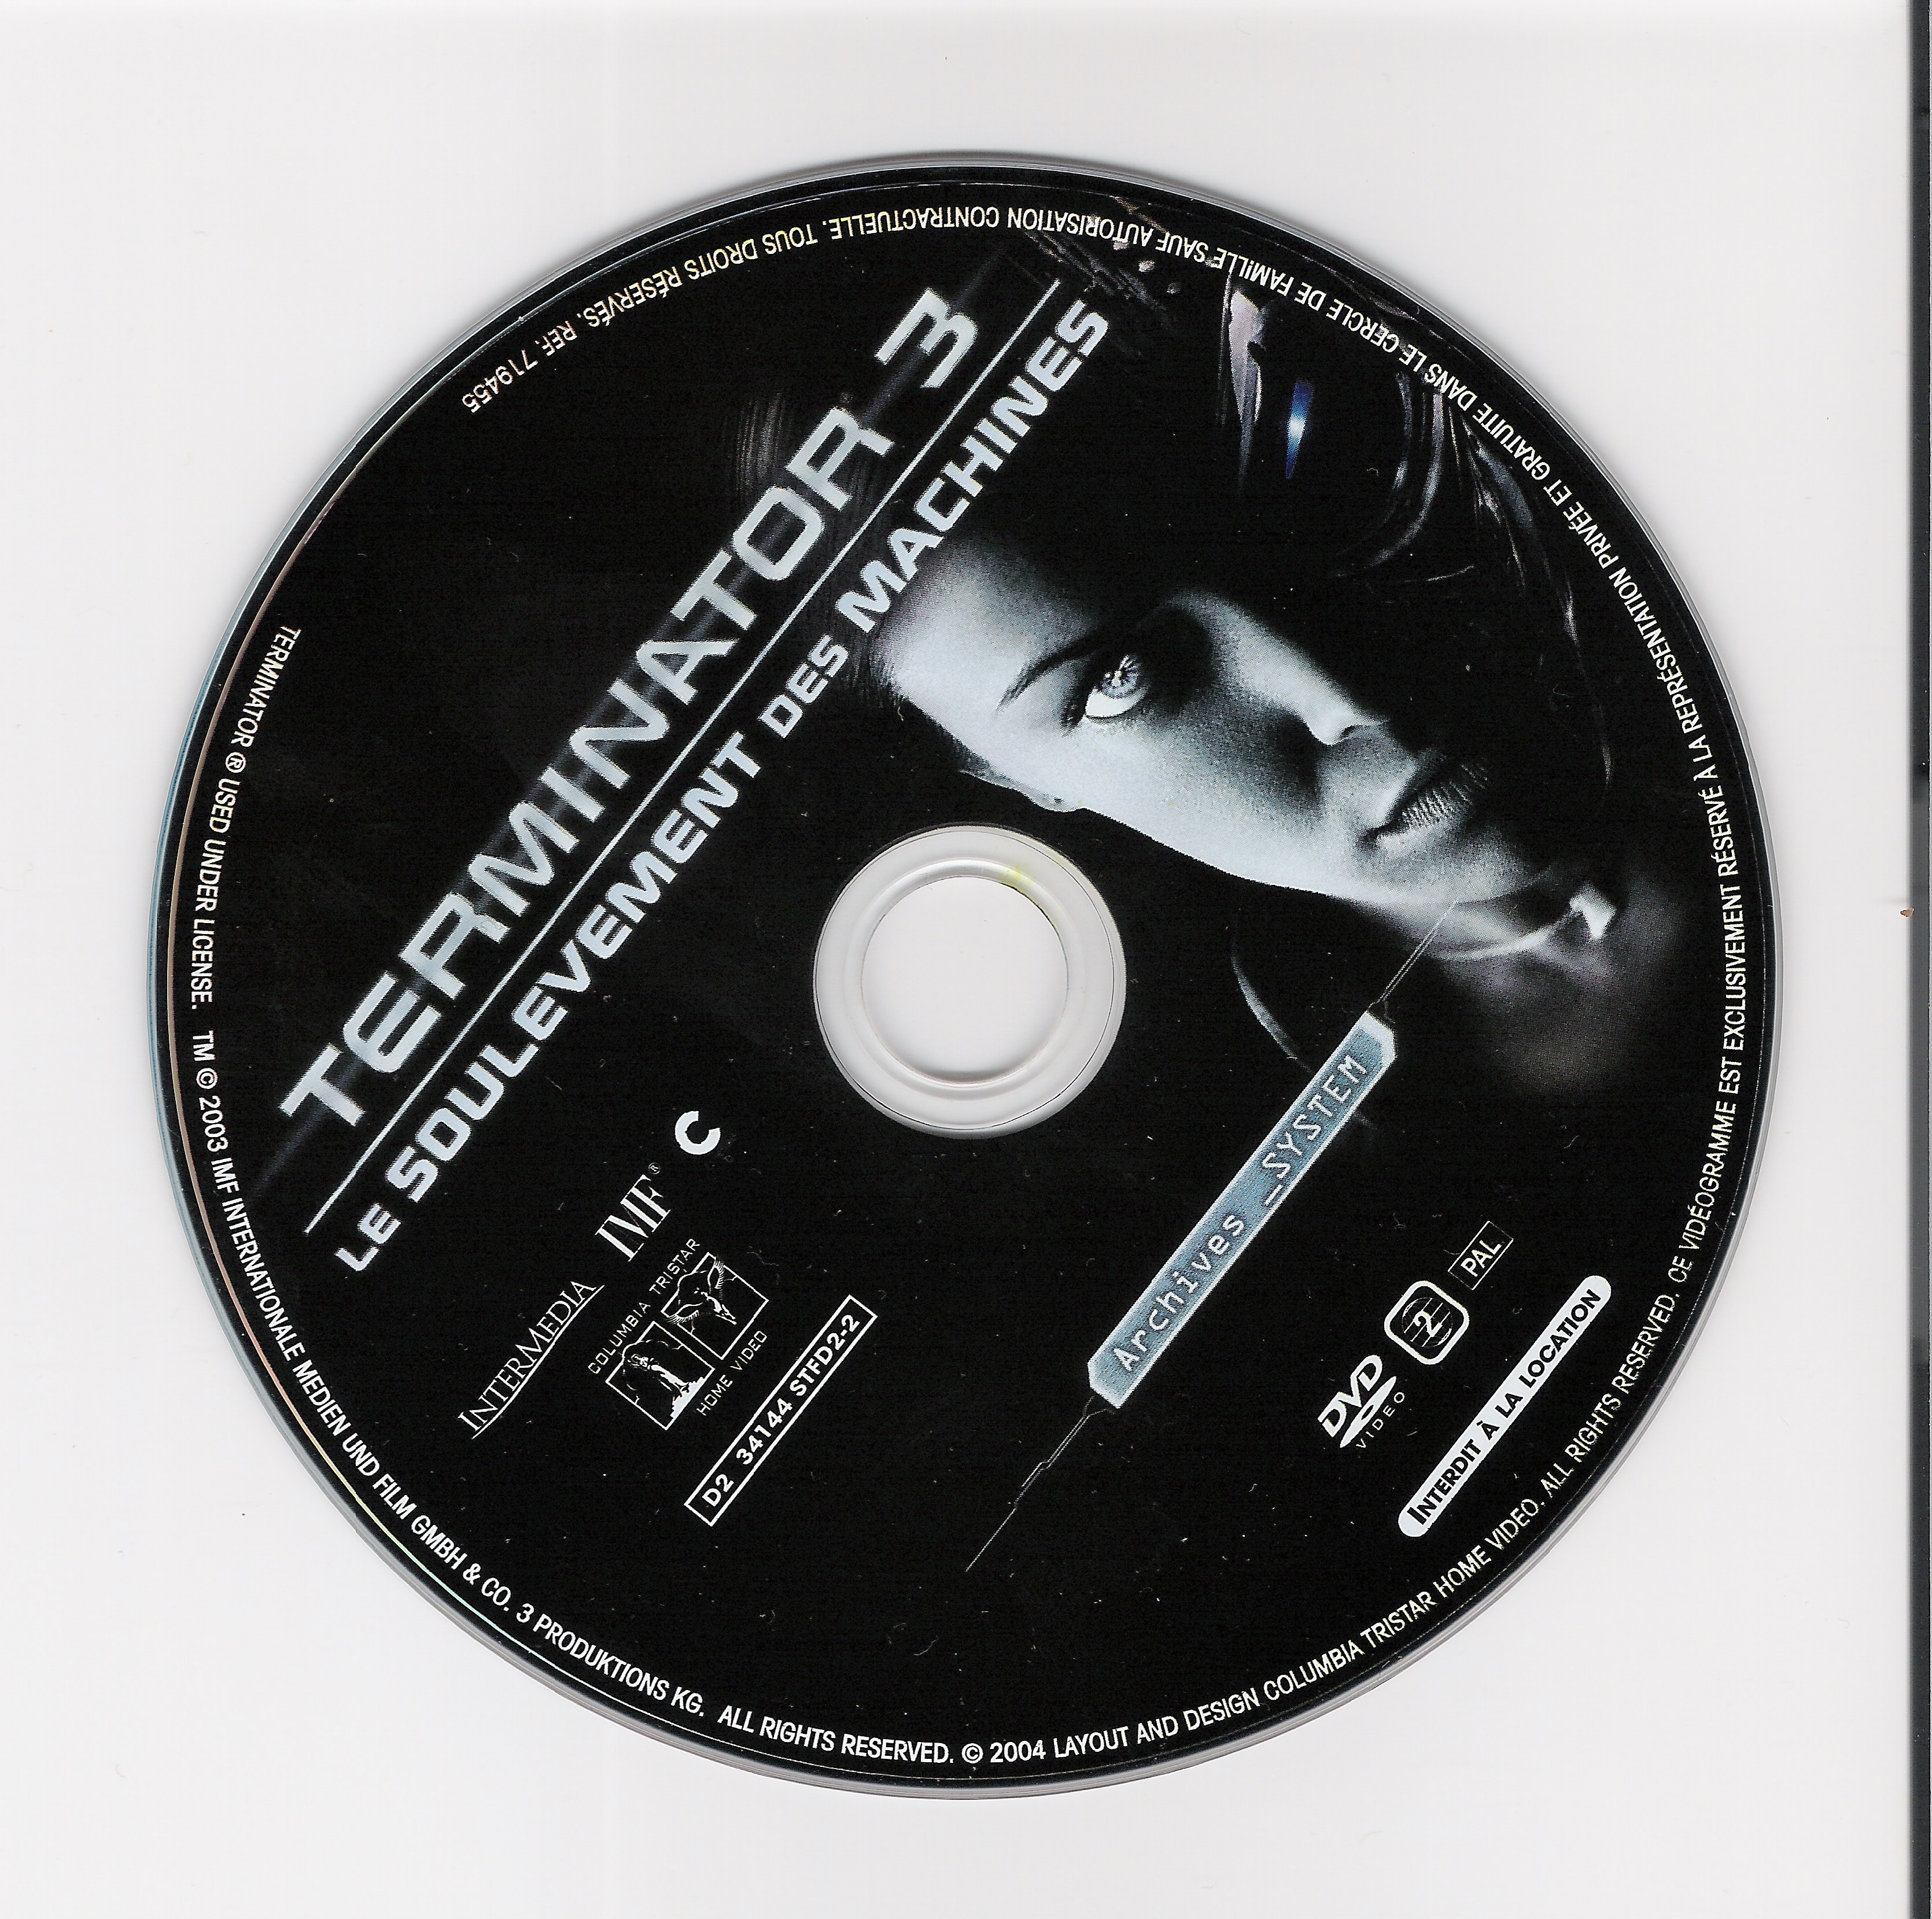 Terminator 3 DISC 2